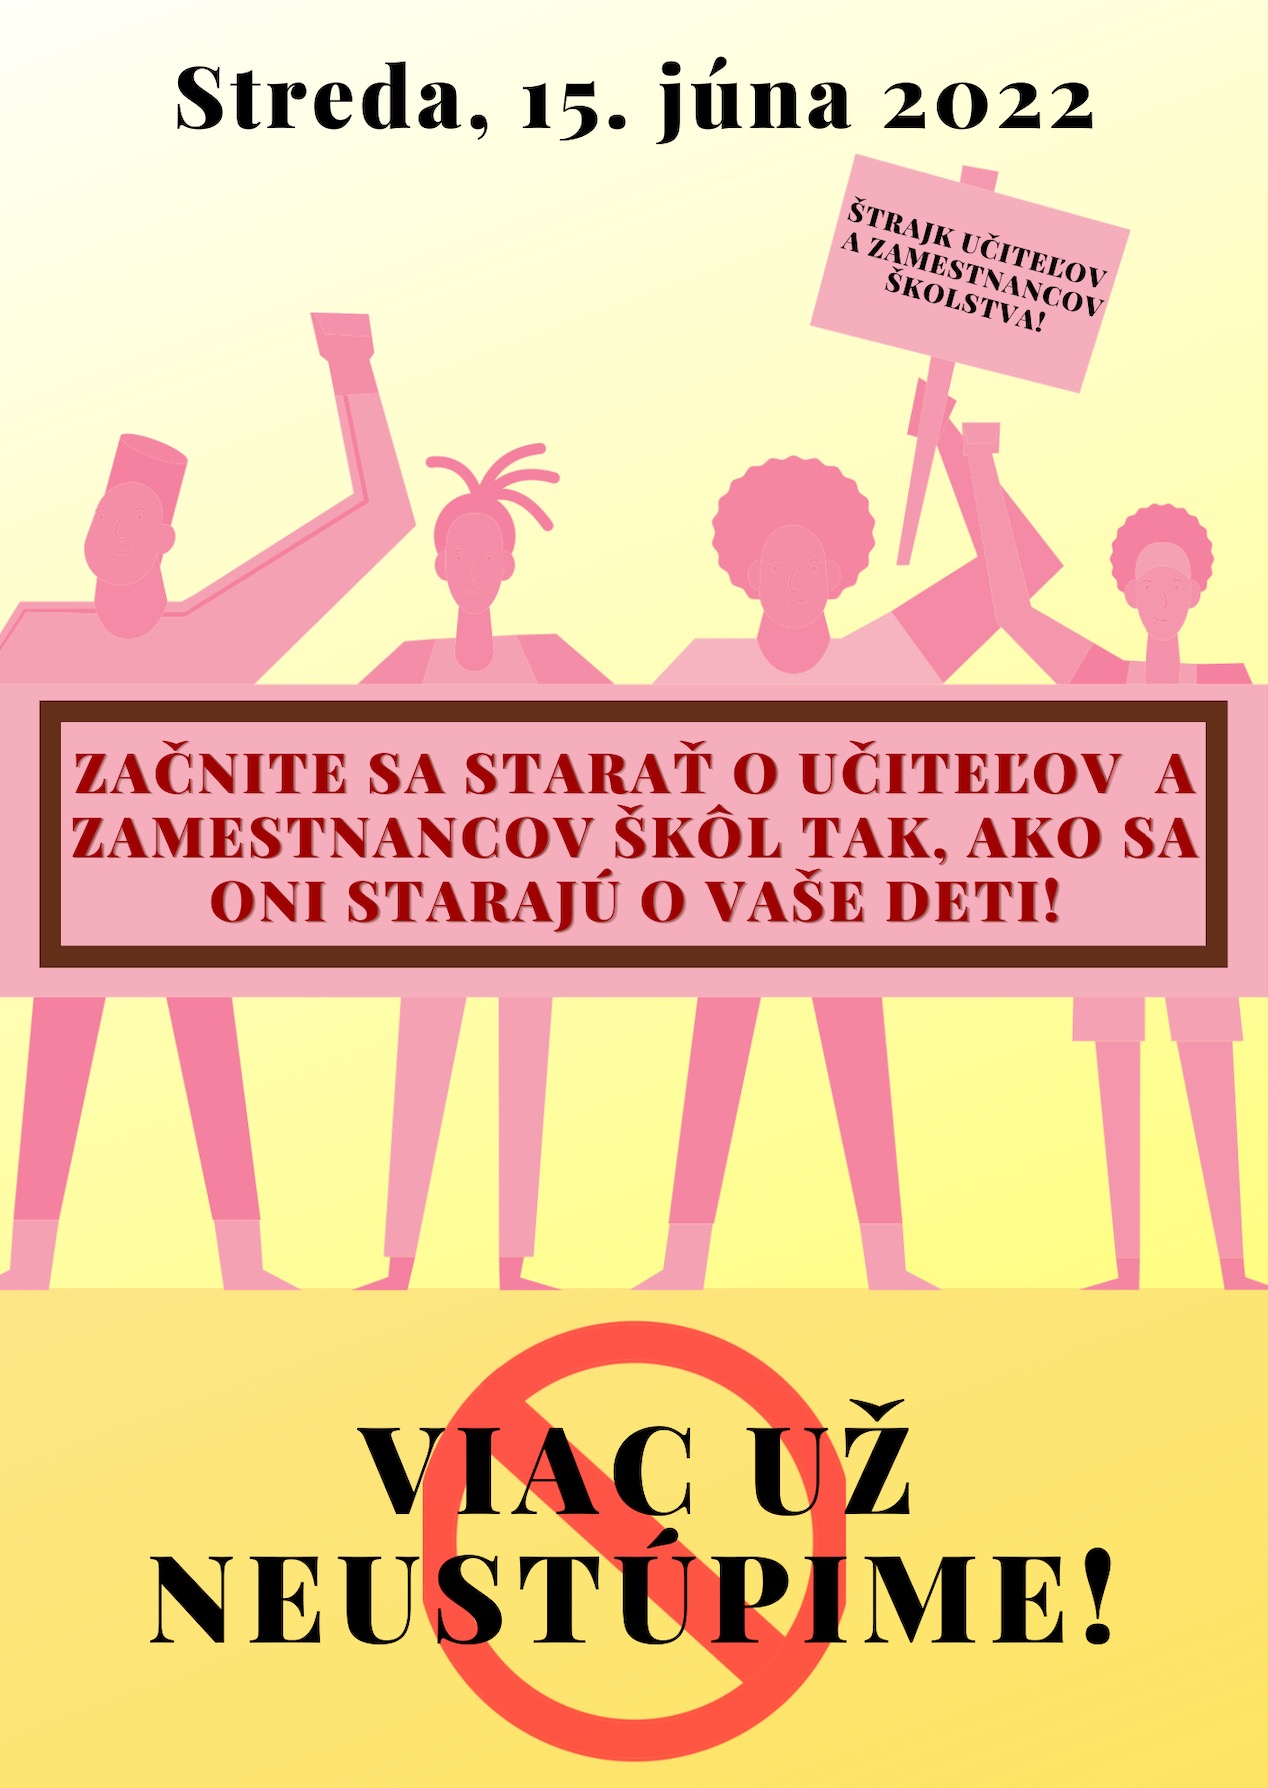 Štrajk učiteľov a zamestnancov školstva 2022 - Obrázok 1